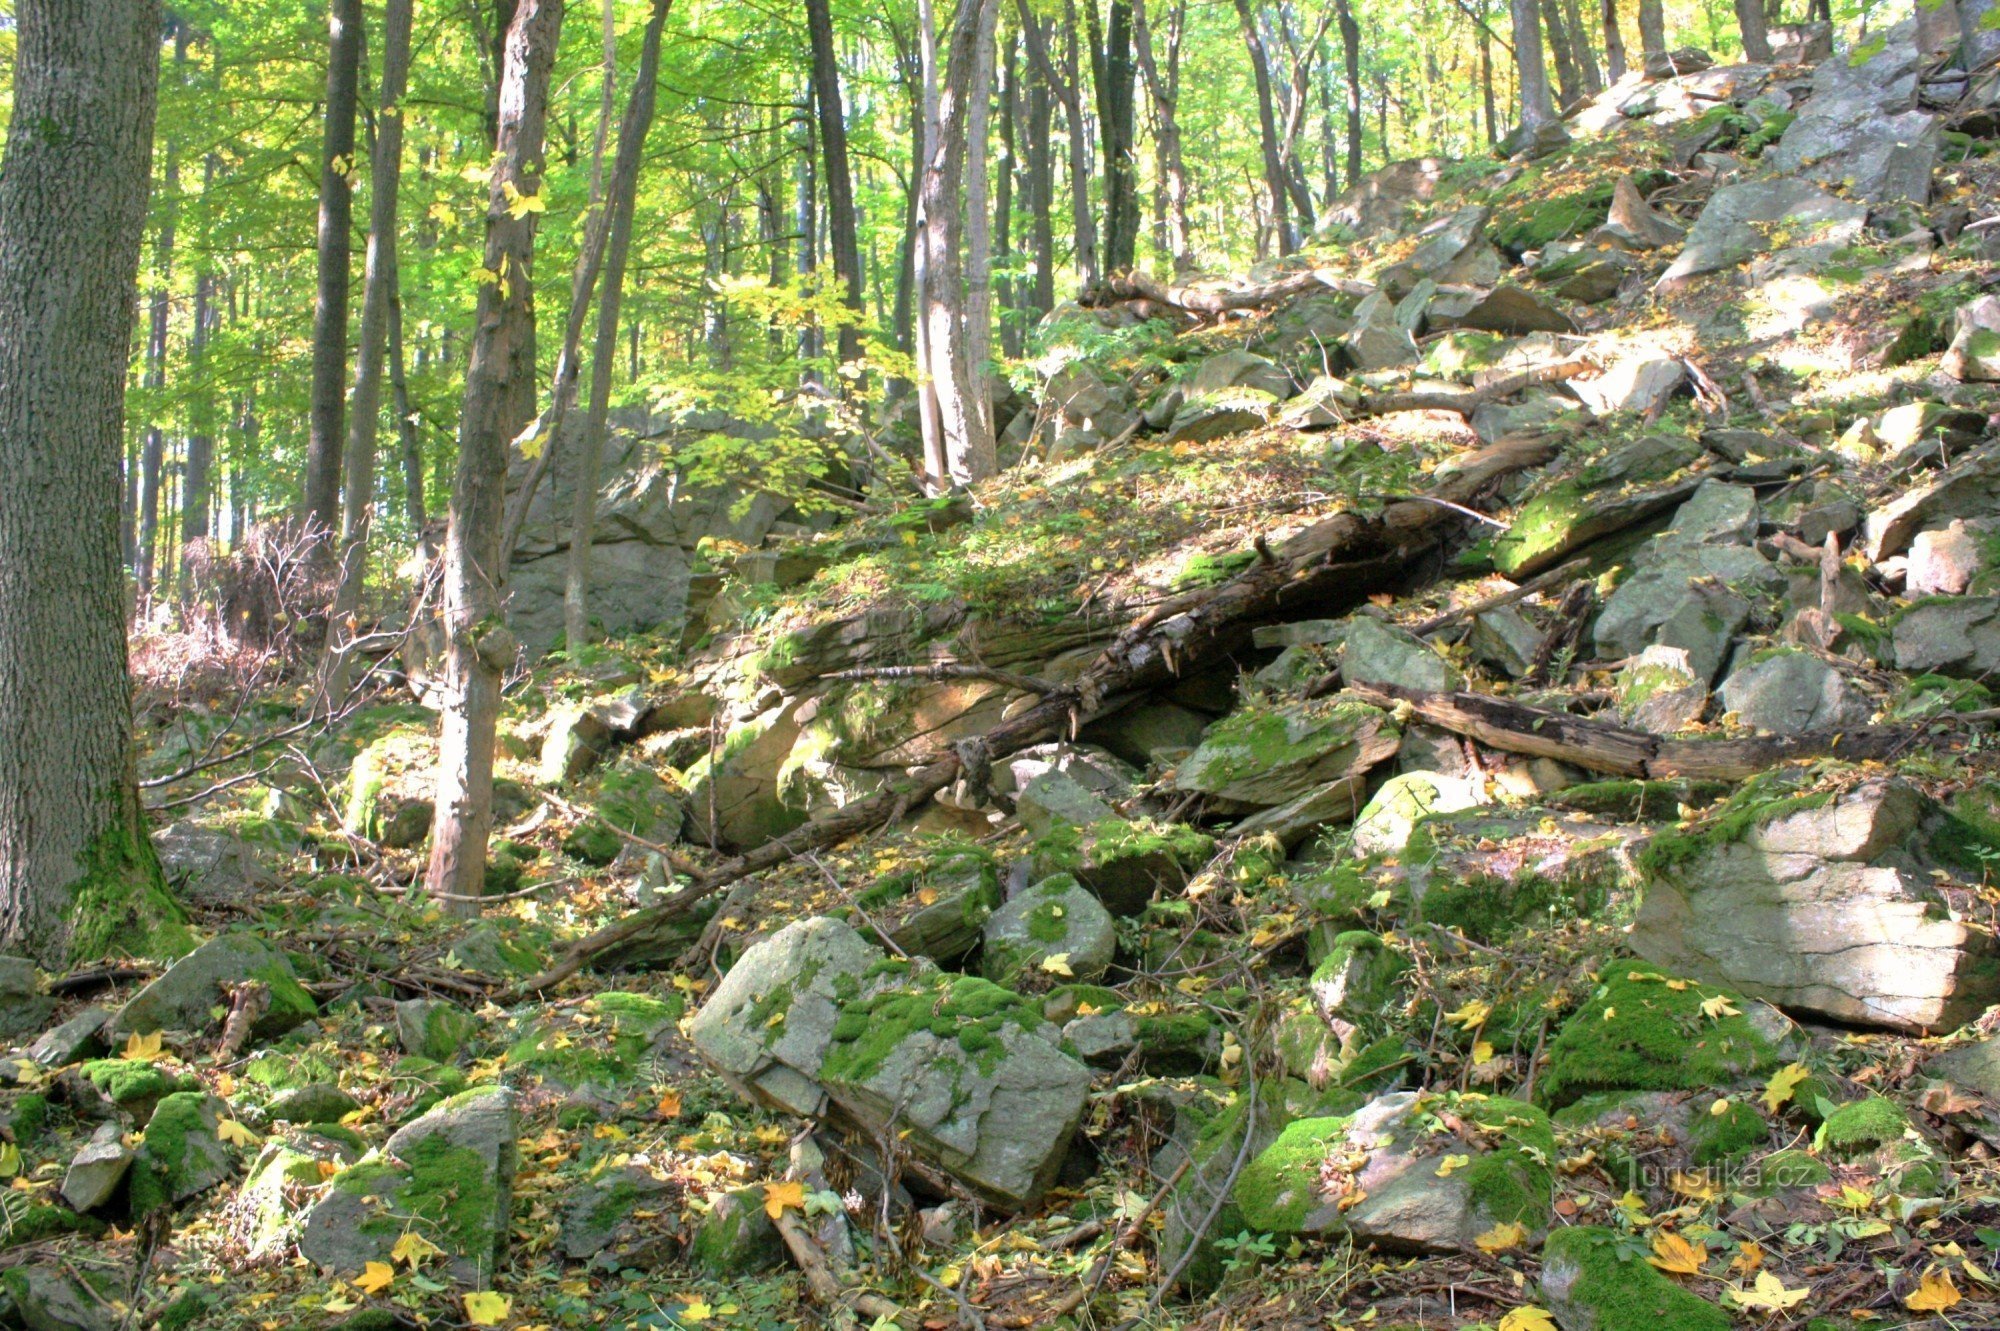 Piasek skalny na stromych zboczach rezerwatu